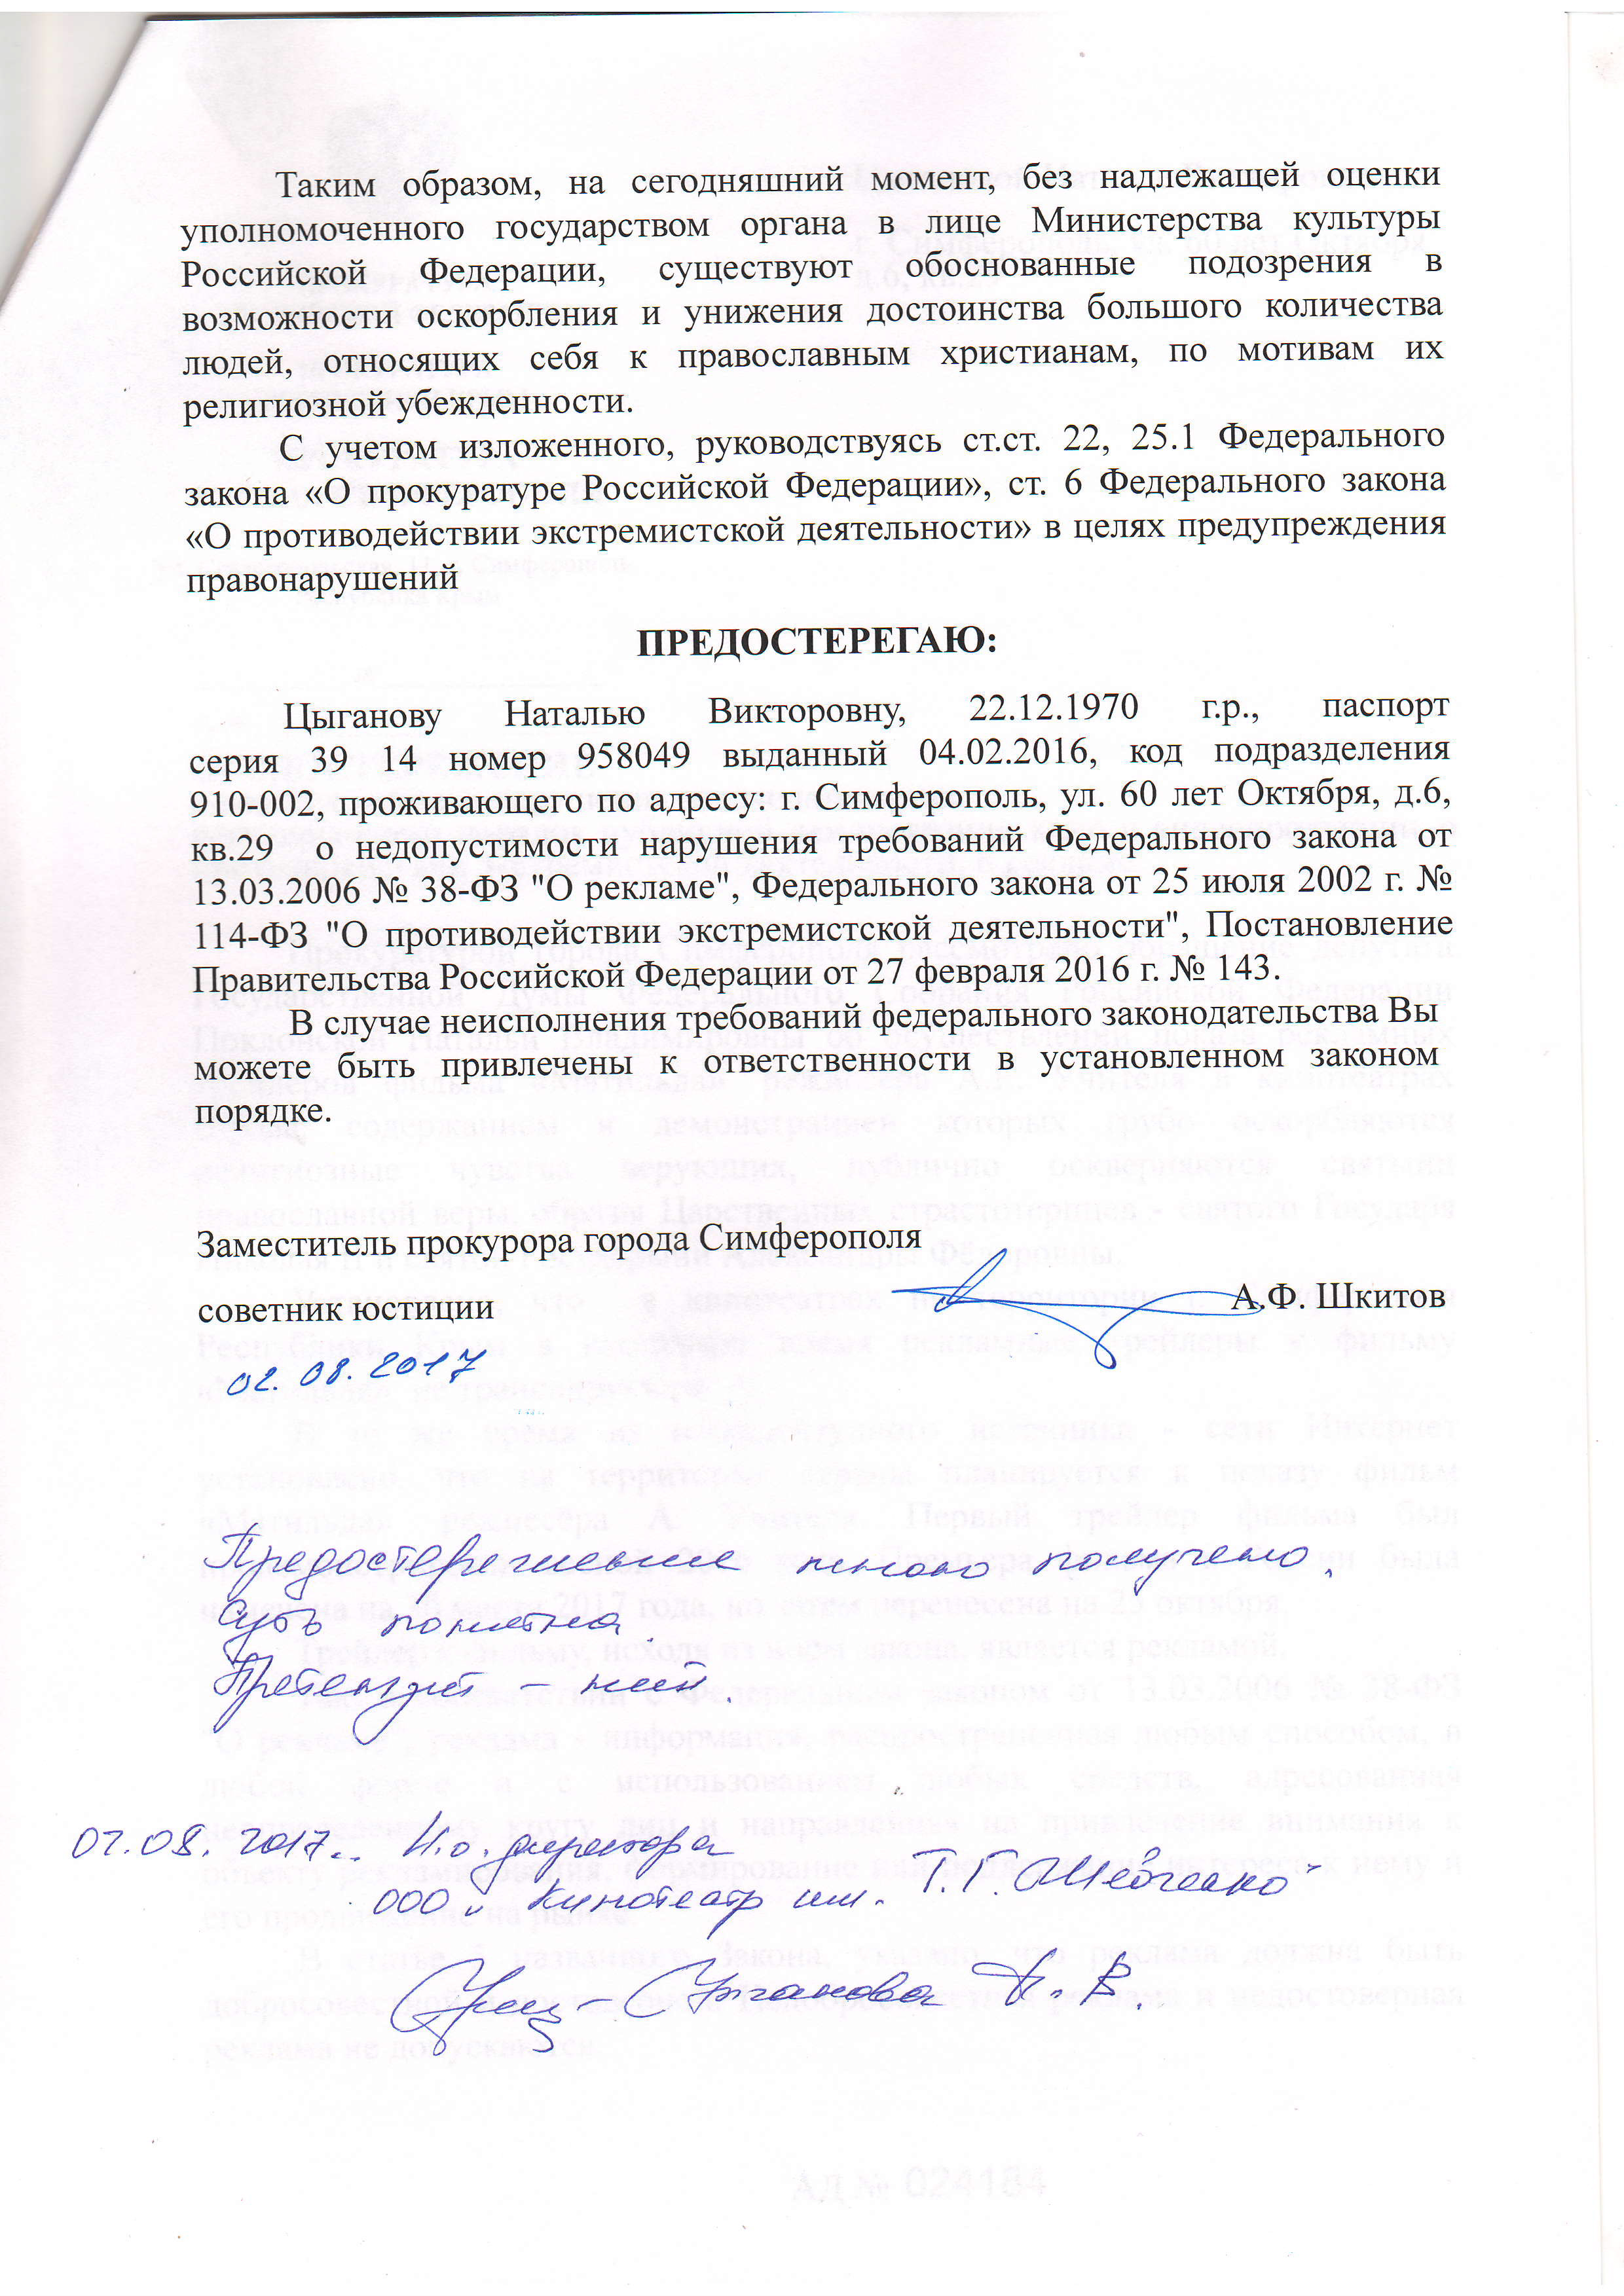 Прокуратура Крыма начала проверку из-за запрета трейлеров «Матильды»